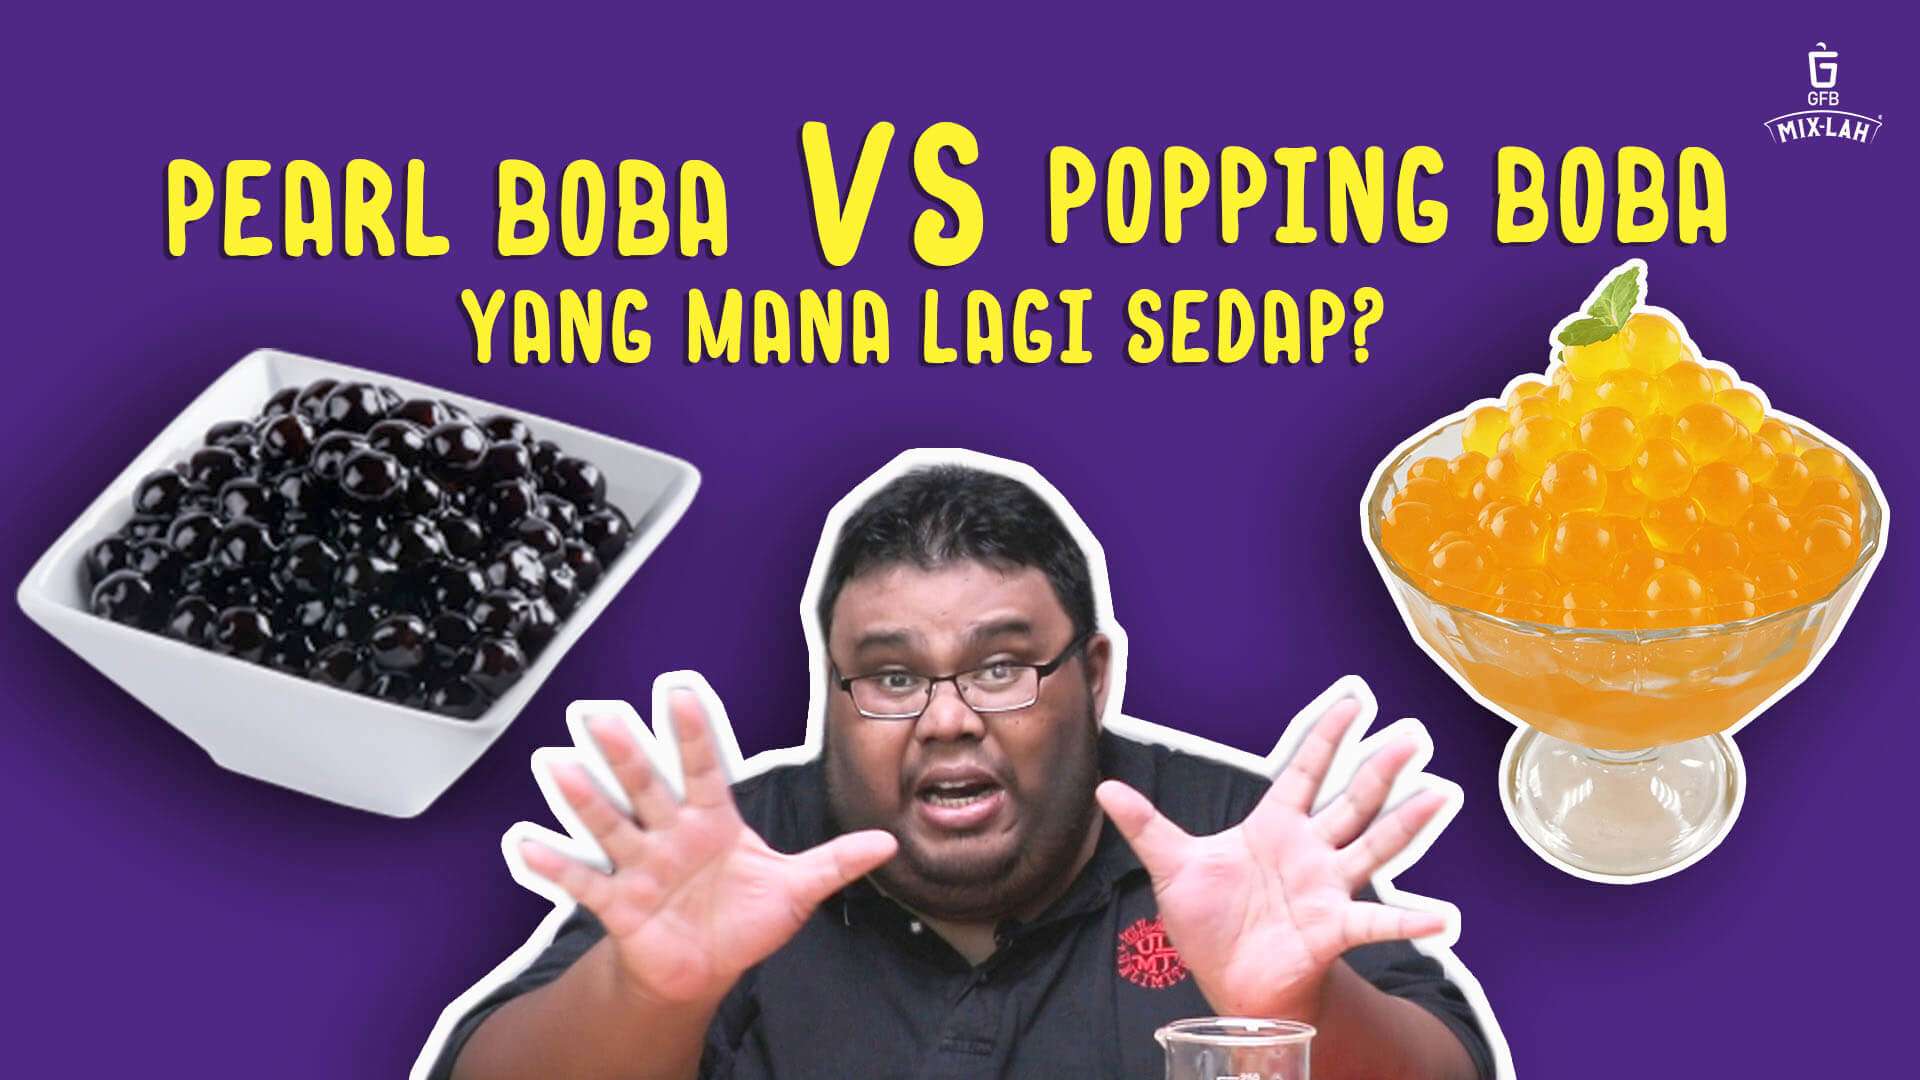 Popping Boba VS Tapioca Pearl Boba mana lagi sedap?